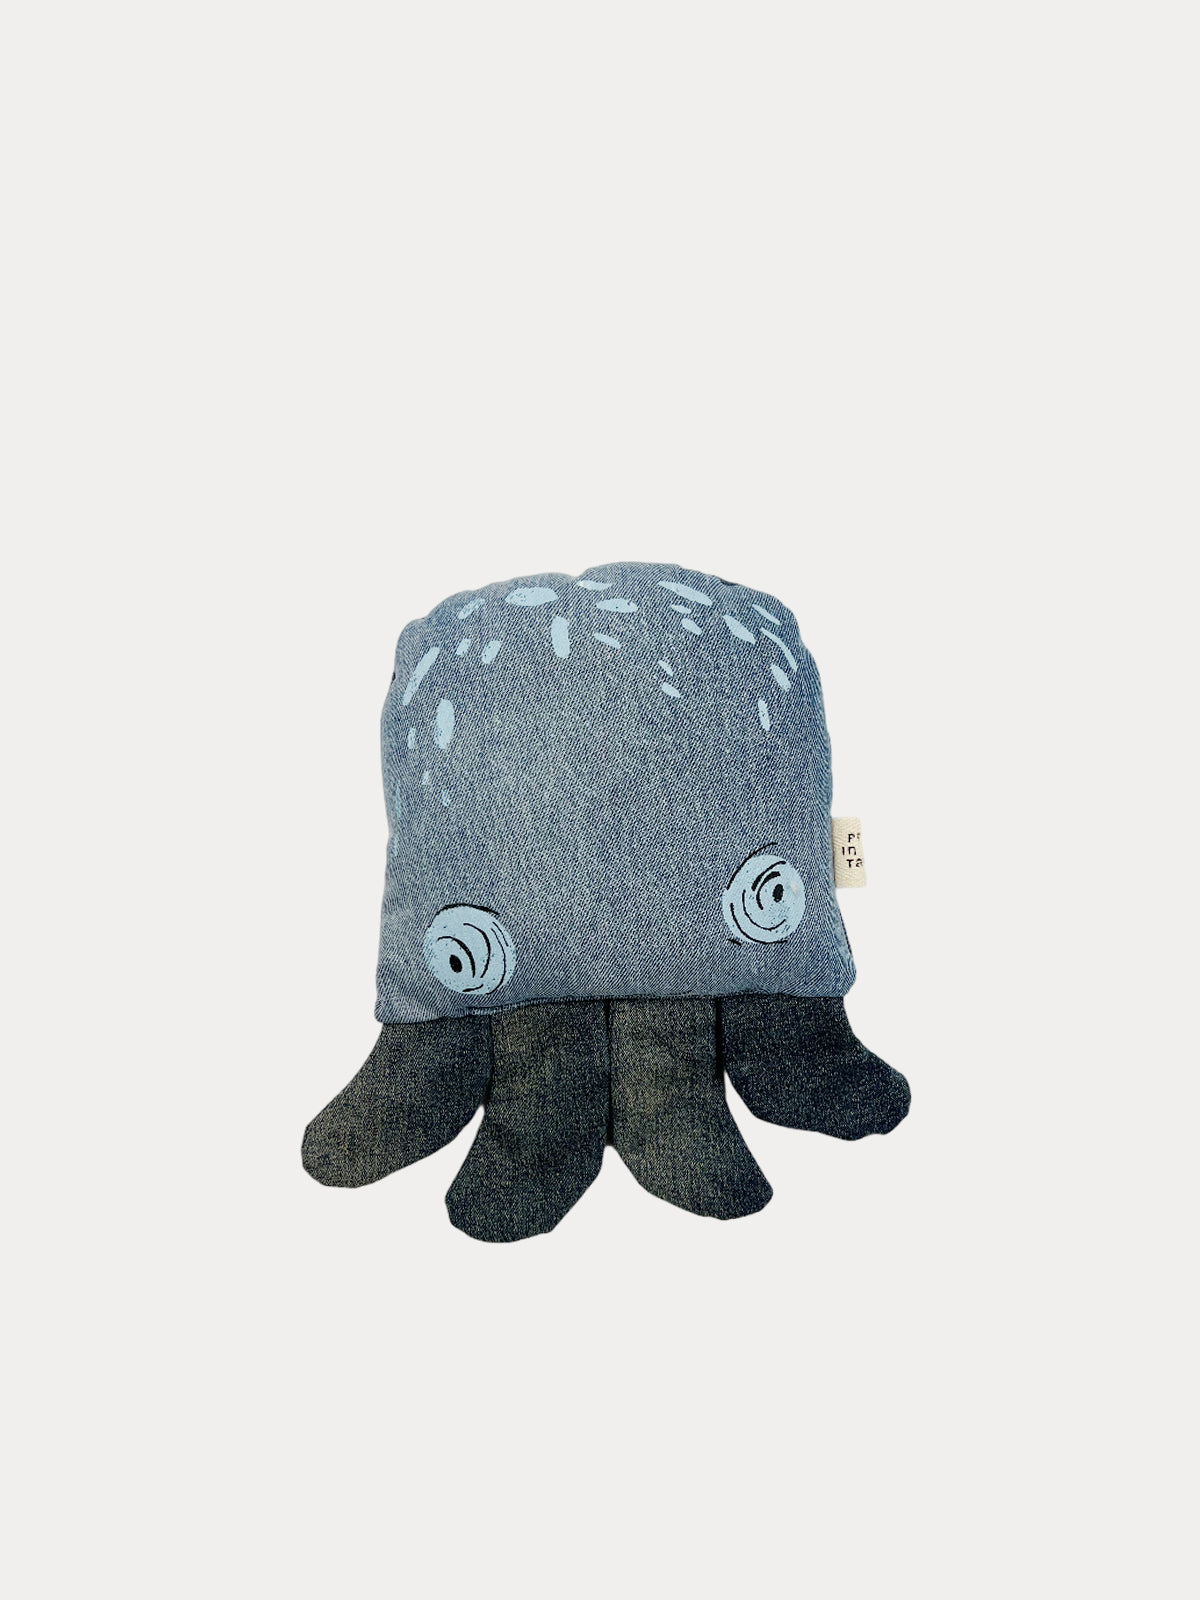 Octopus pillow doll